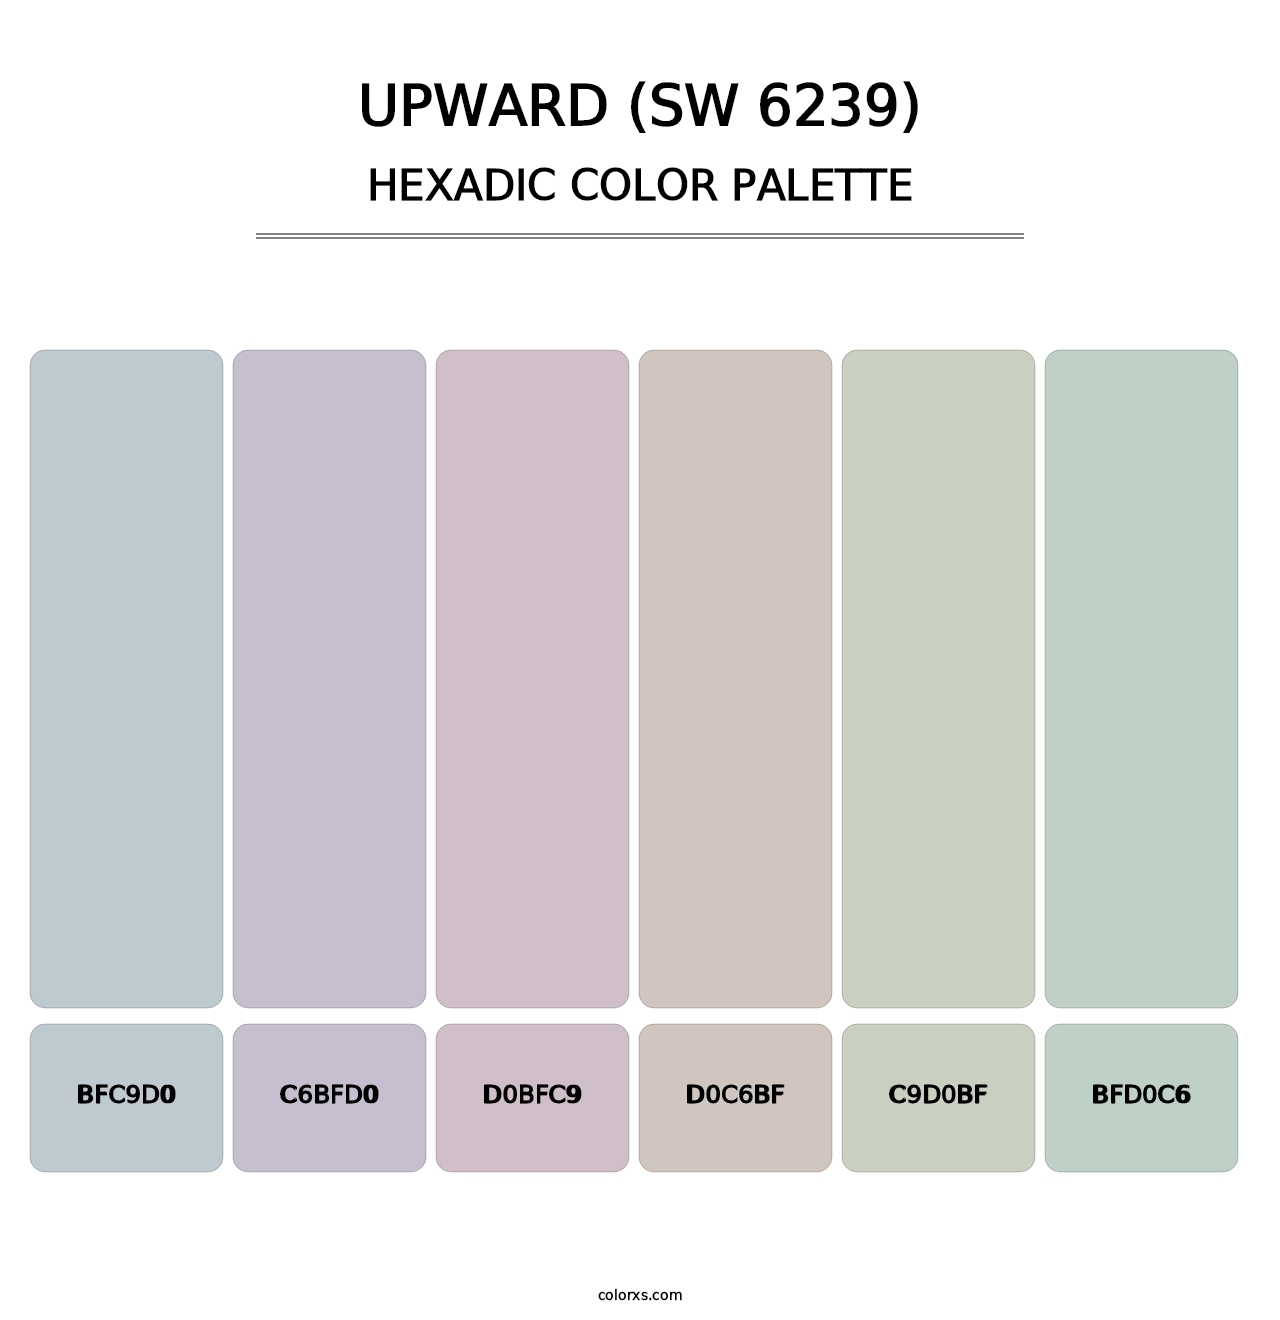 Upward (SW 6239) - Hexadic Color Palette